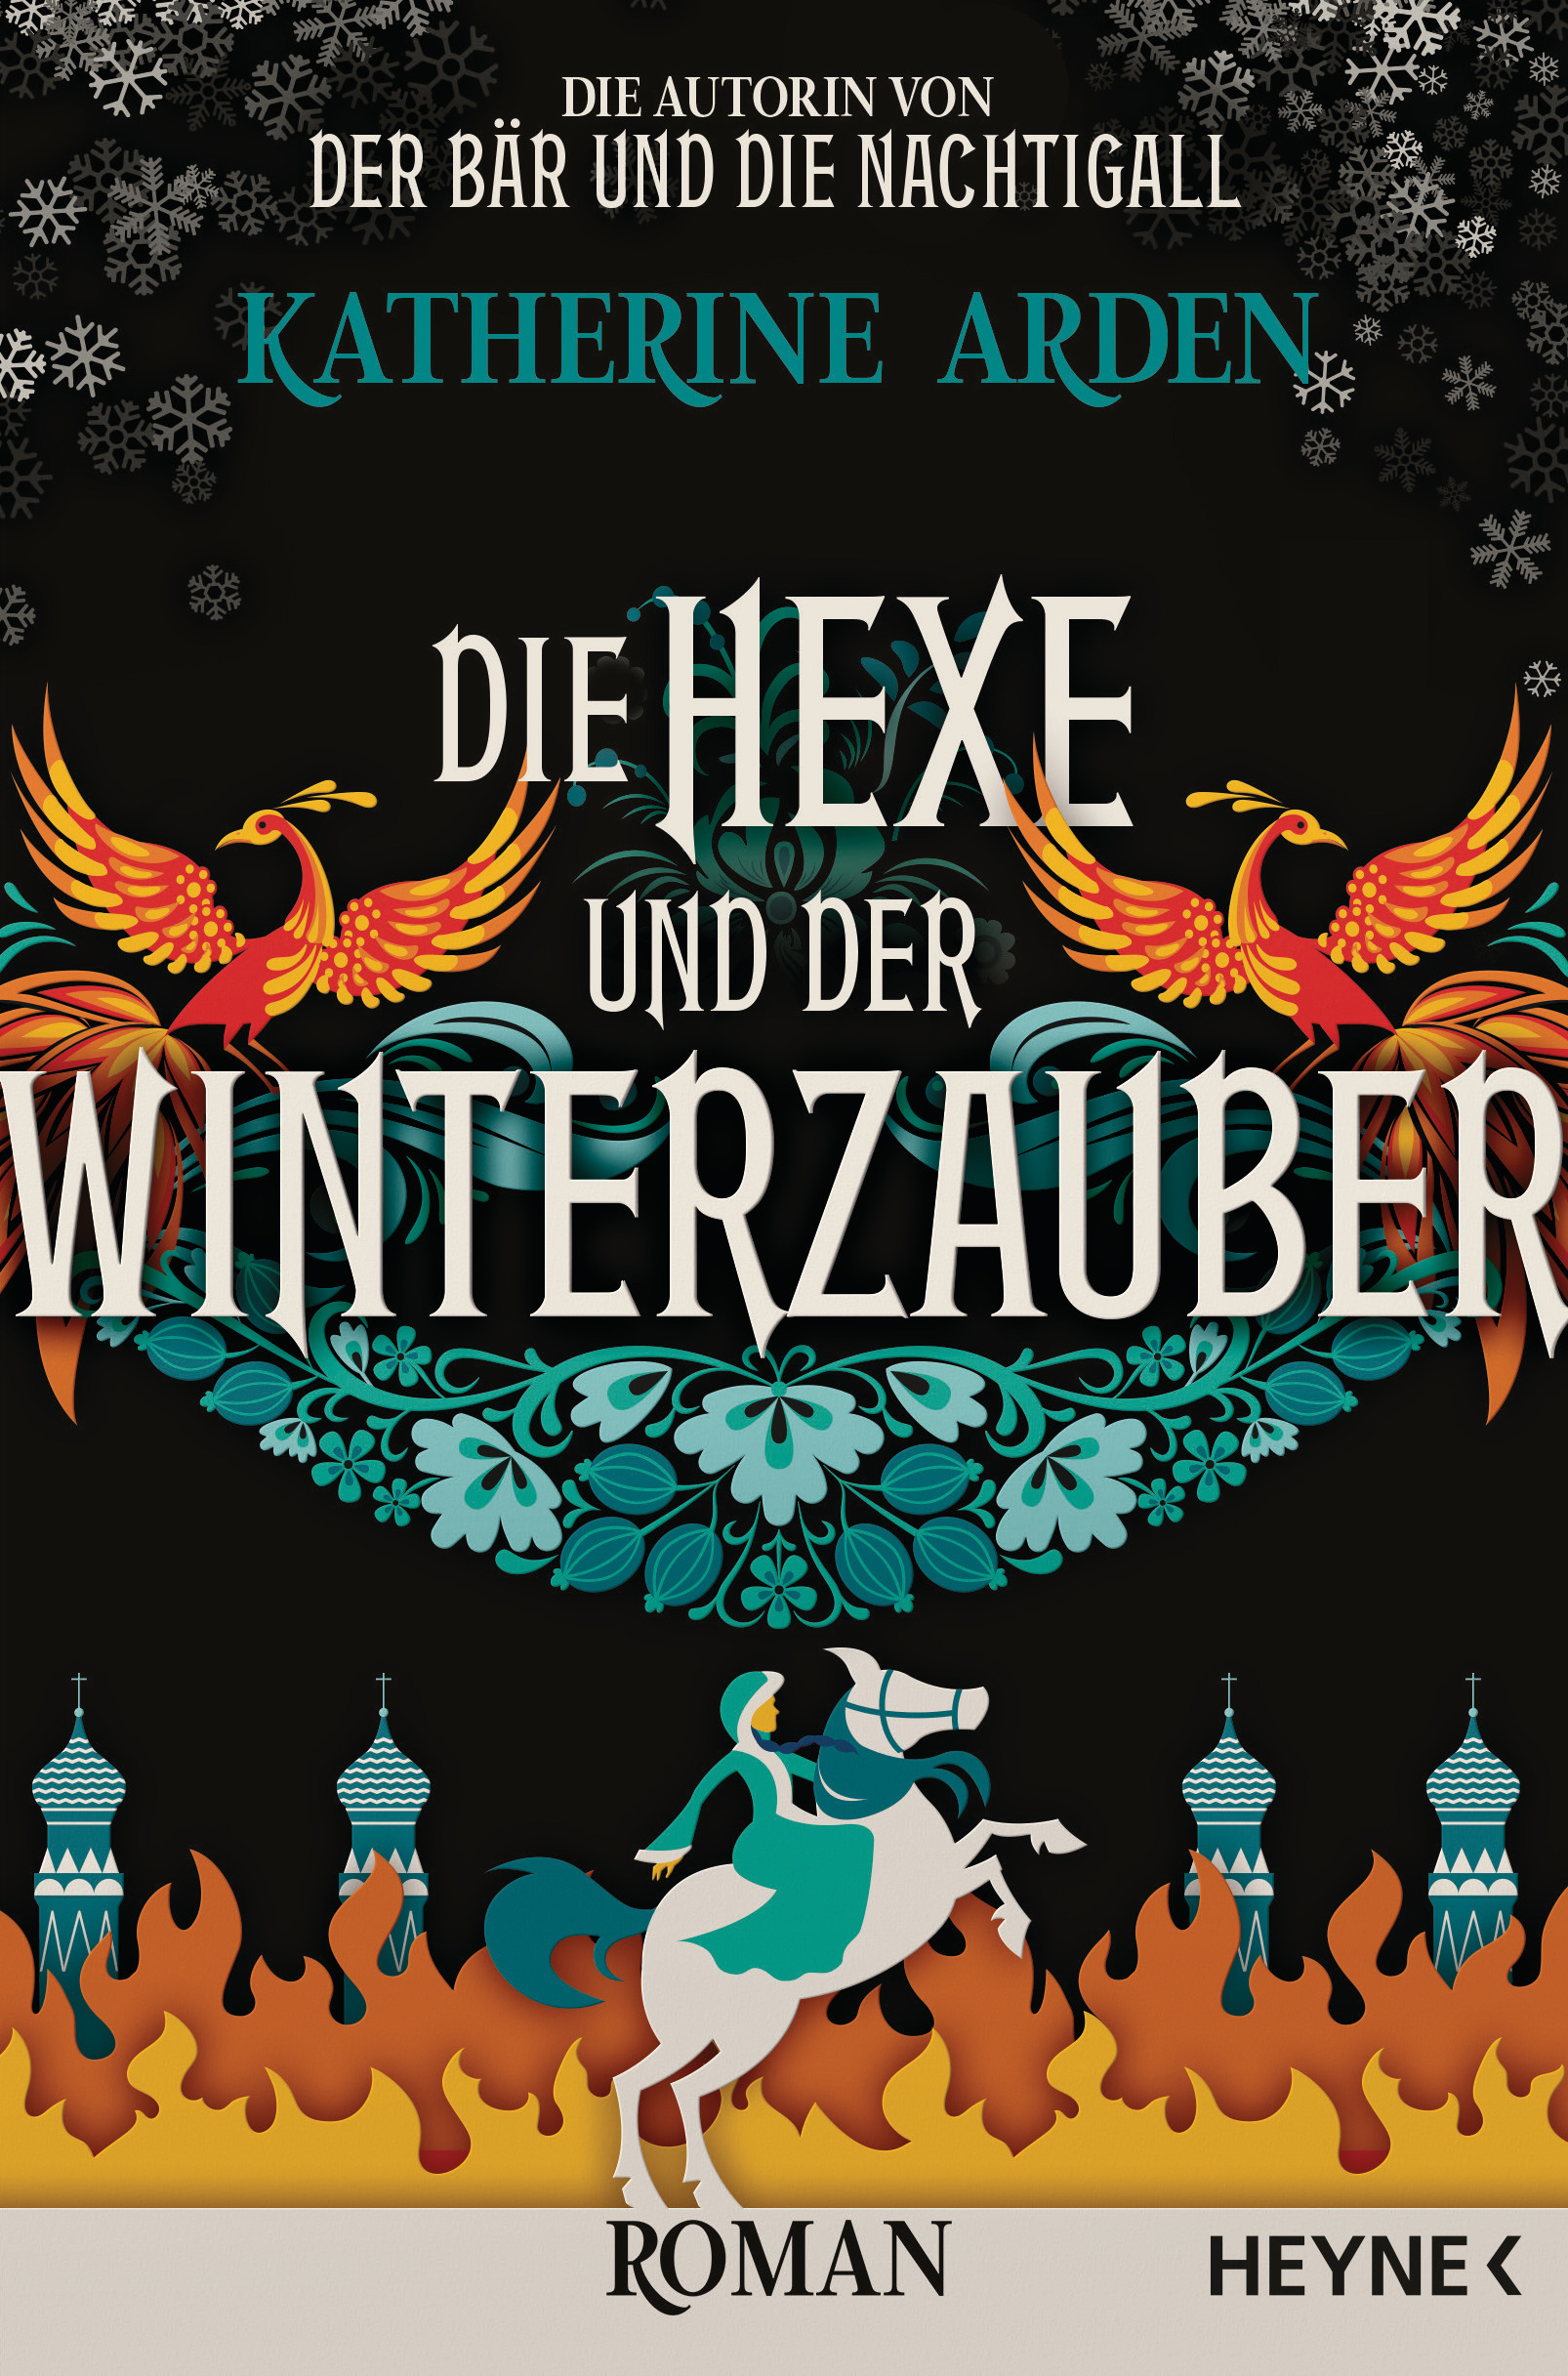 Bücherblog. Rezension. Buchcover. Die Hexe und der Winterzauber (Band 3) von Katherine Arden. Fantasy. Historische Fantasy. Heyne.